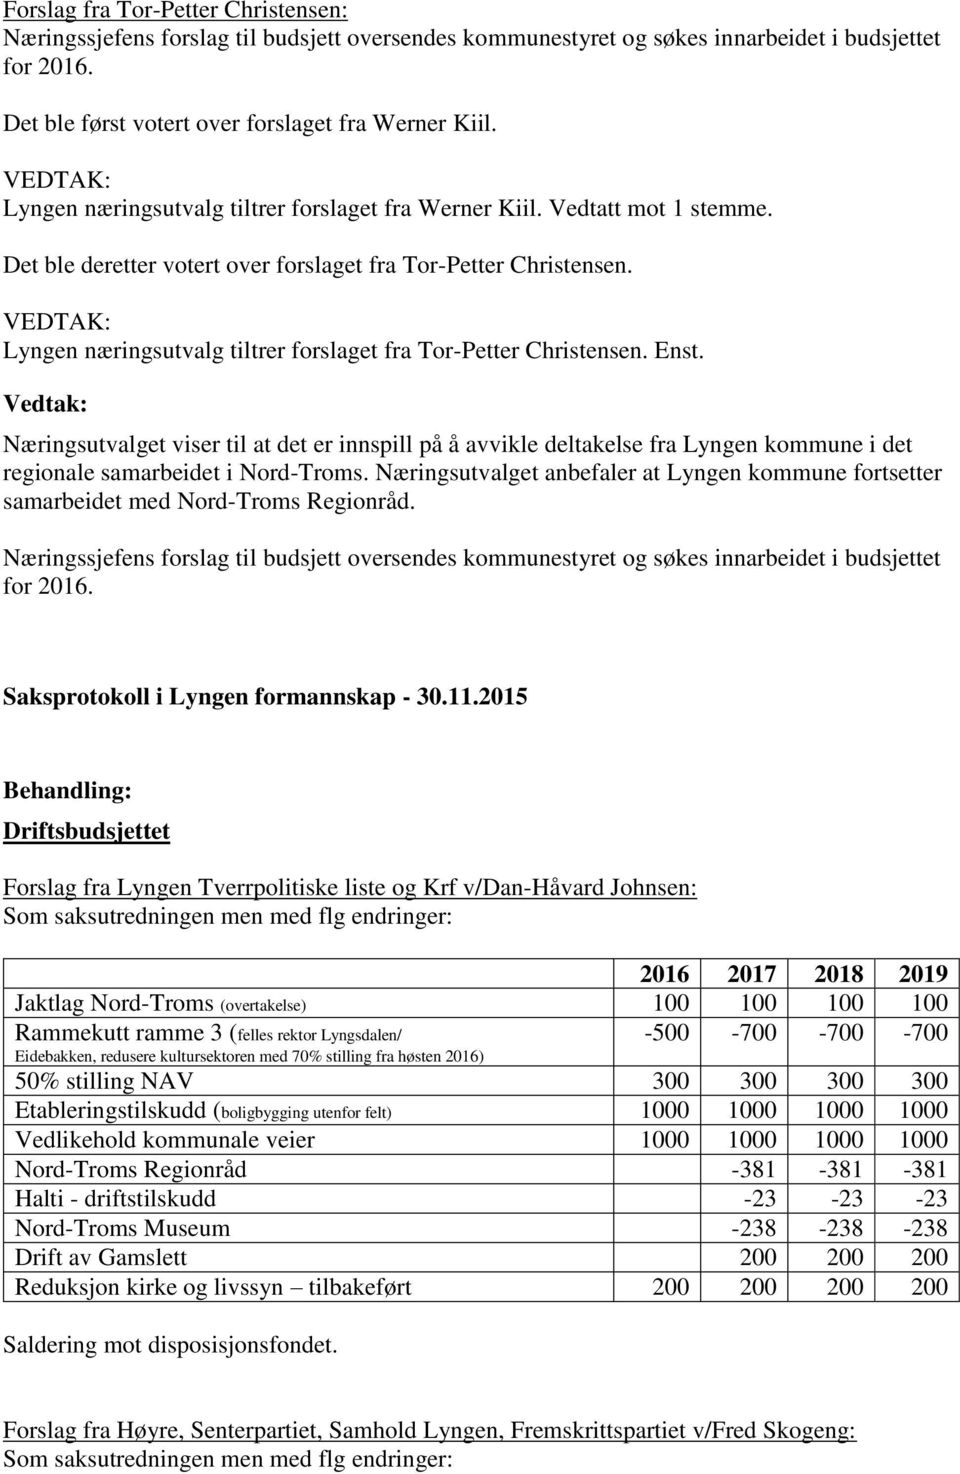 VEDTAK: Lyngen næringsutvalg tiltrer forslaget fra Tor-Petter Christensen. Enst.